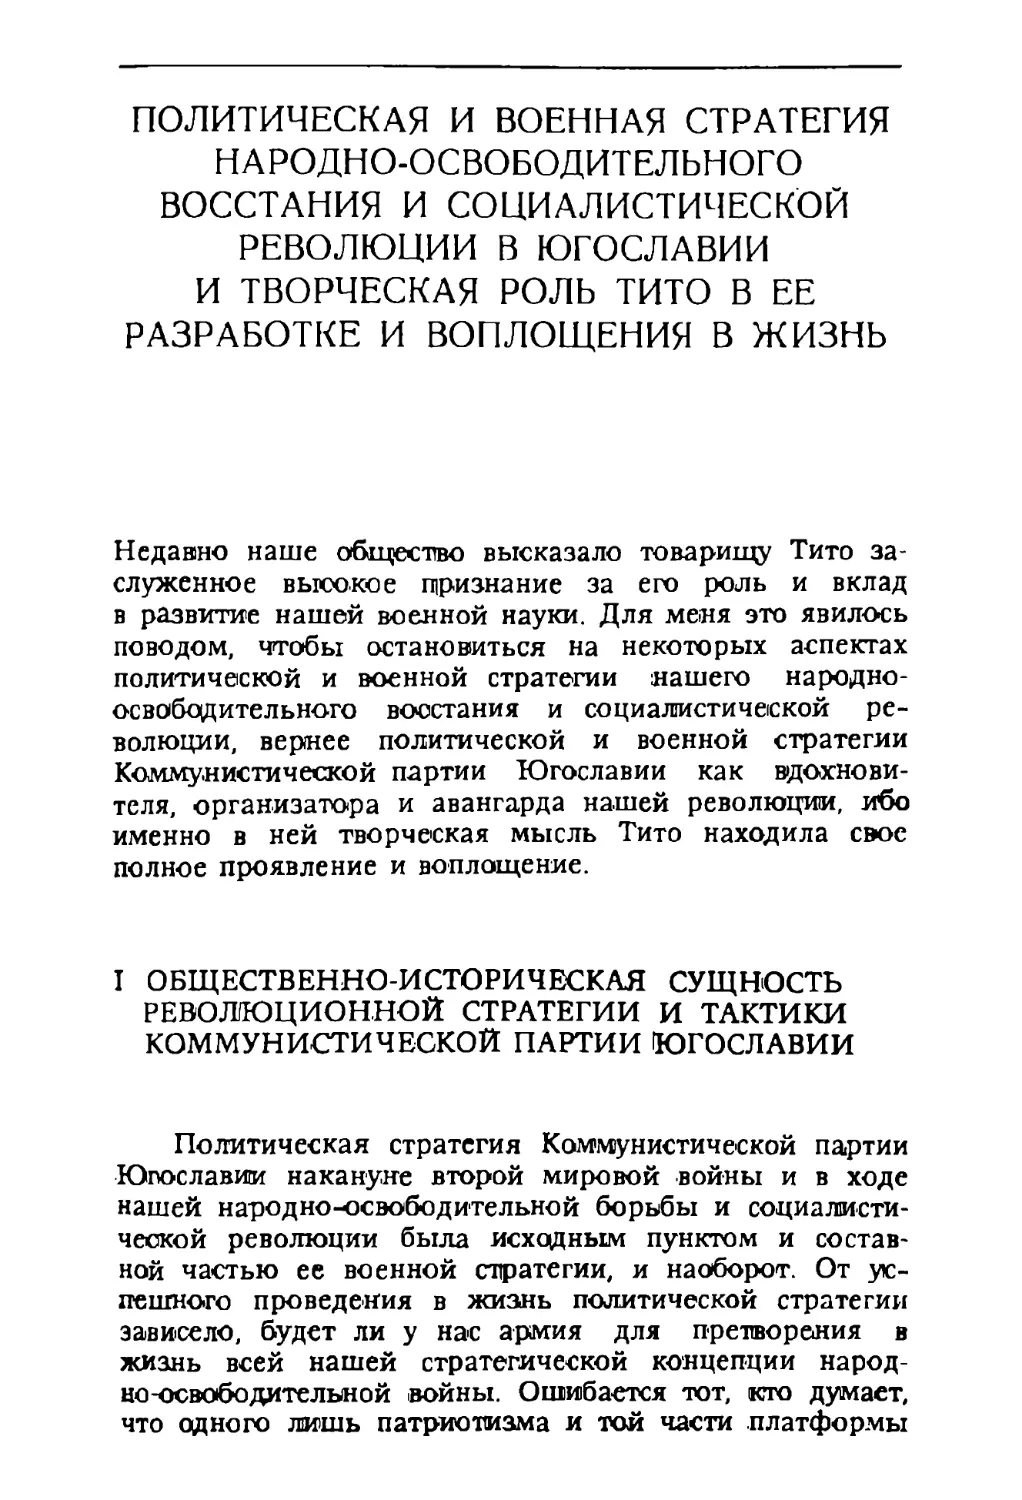 I. Общественно-историческая сущность революционной стратегии и тактики Комунистической партии Югославии